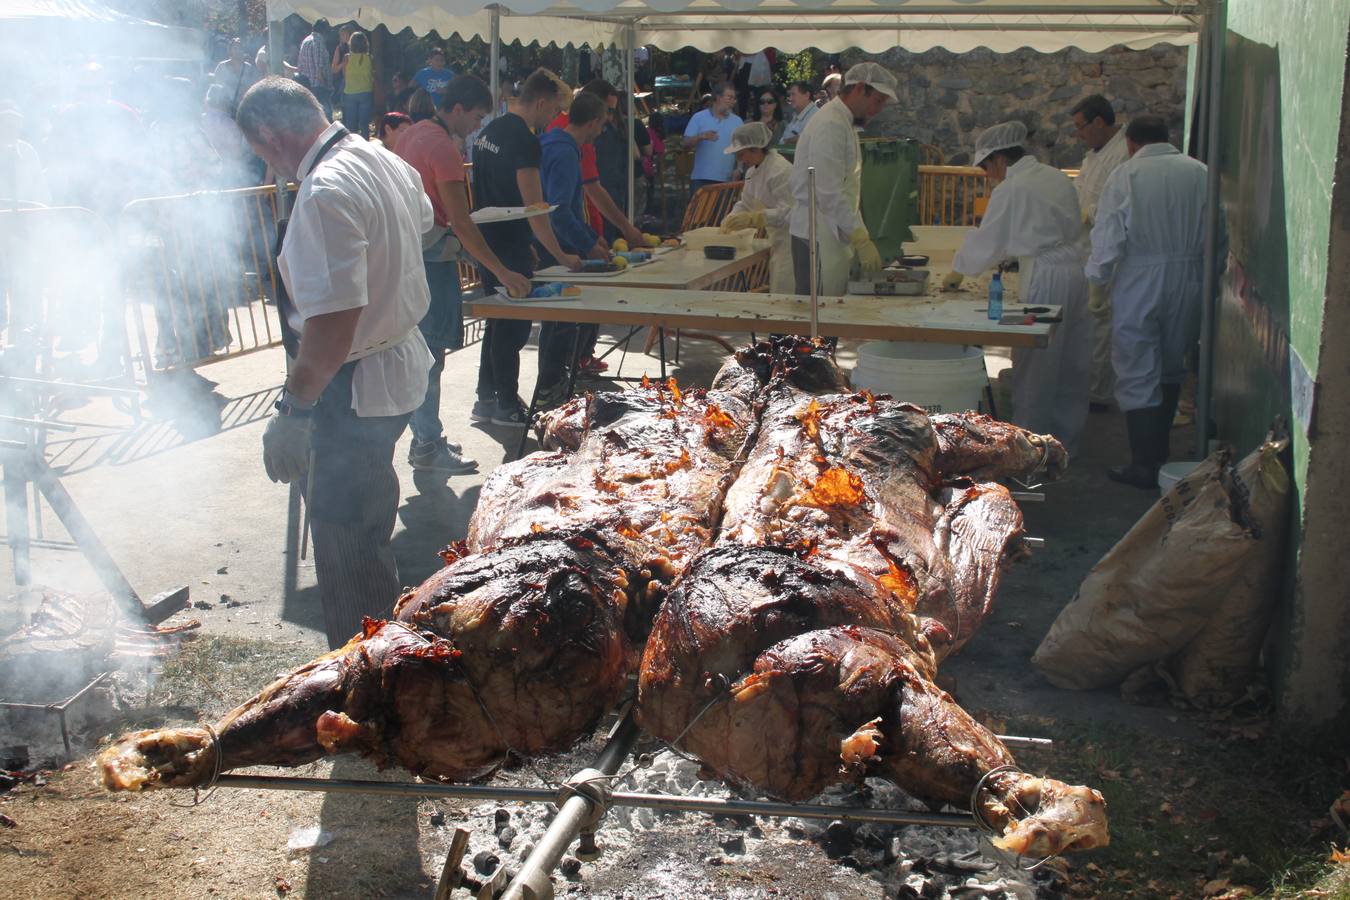 Gran ambiente en este festival gastronómico que se celebra cada año por estas fechas en Enciso.